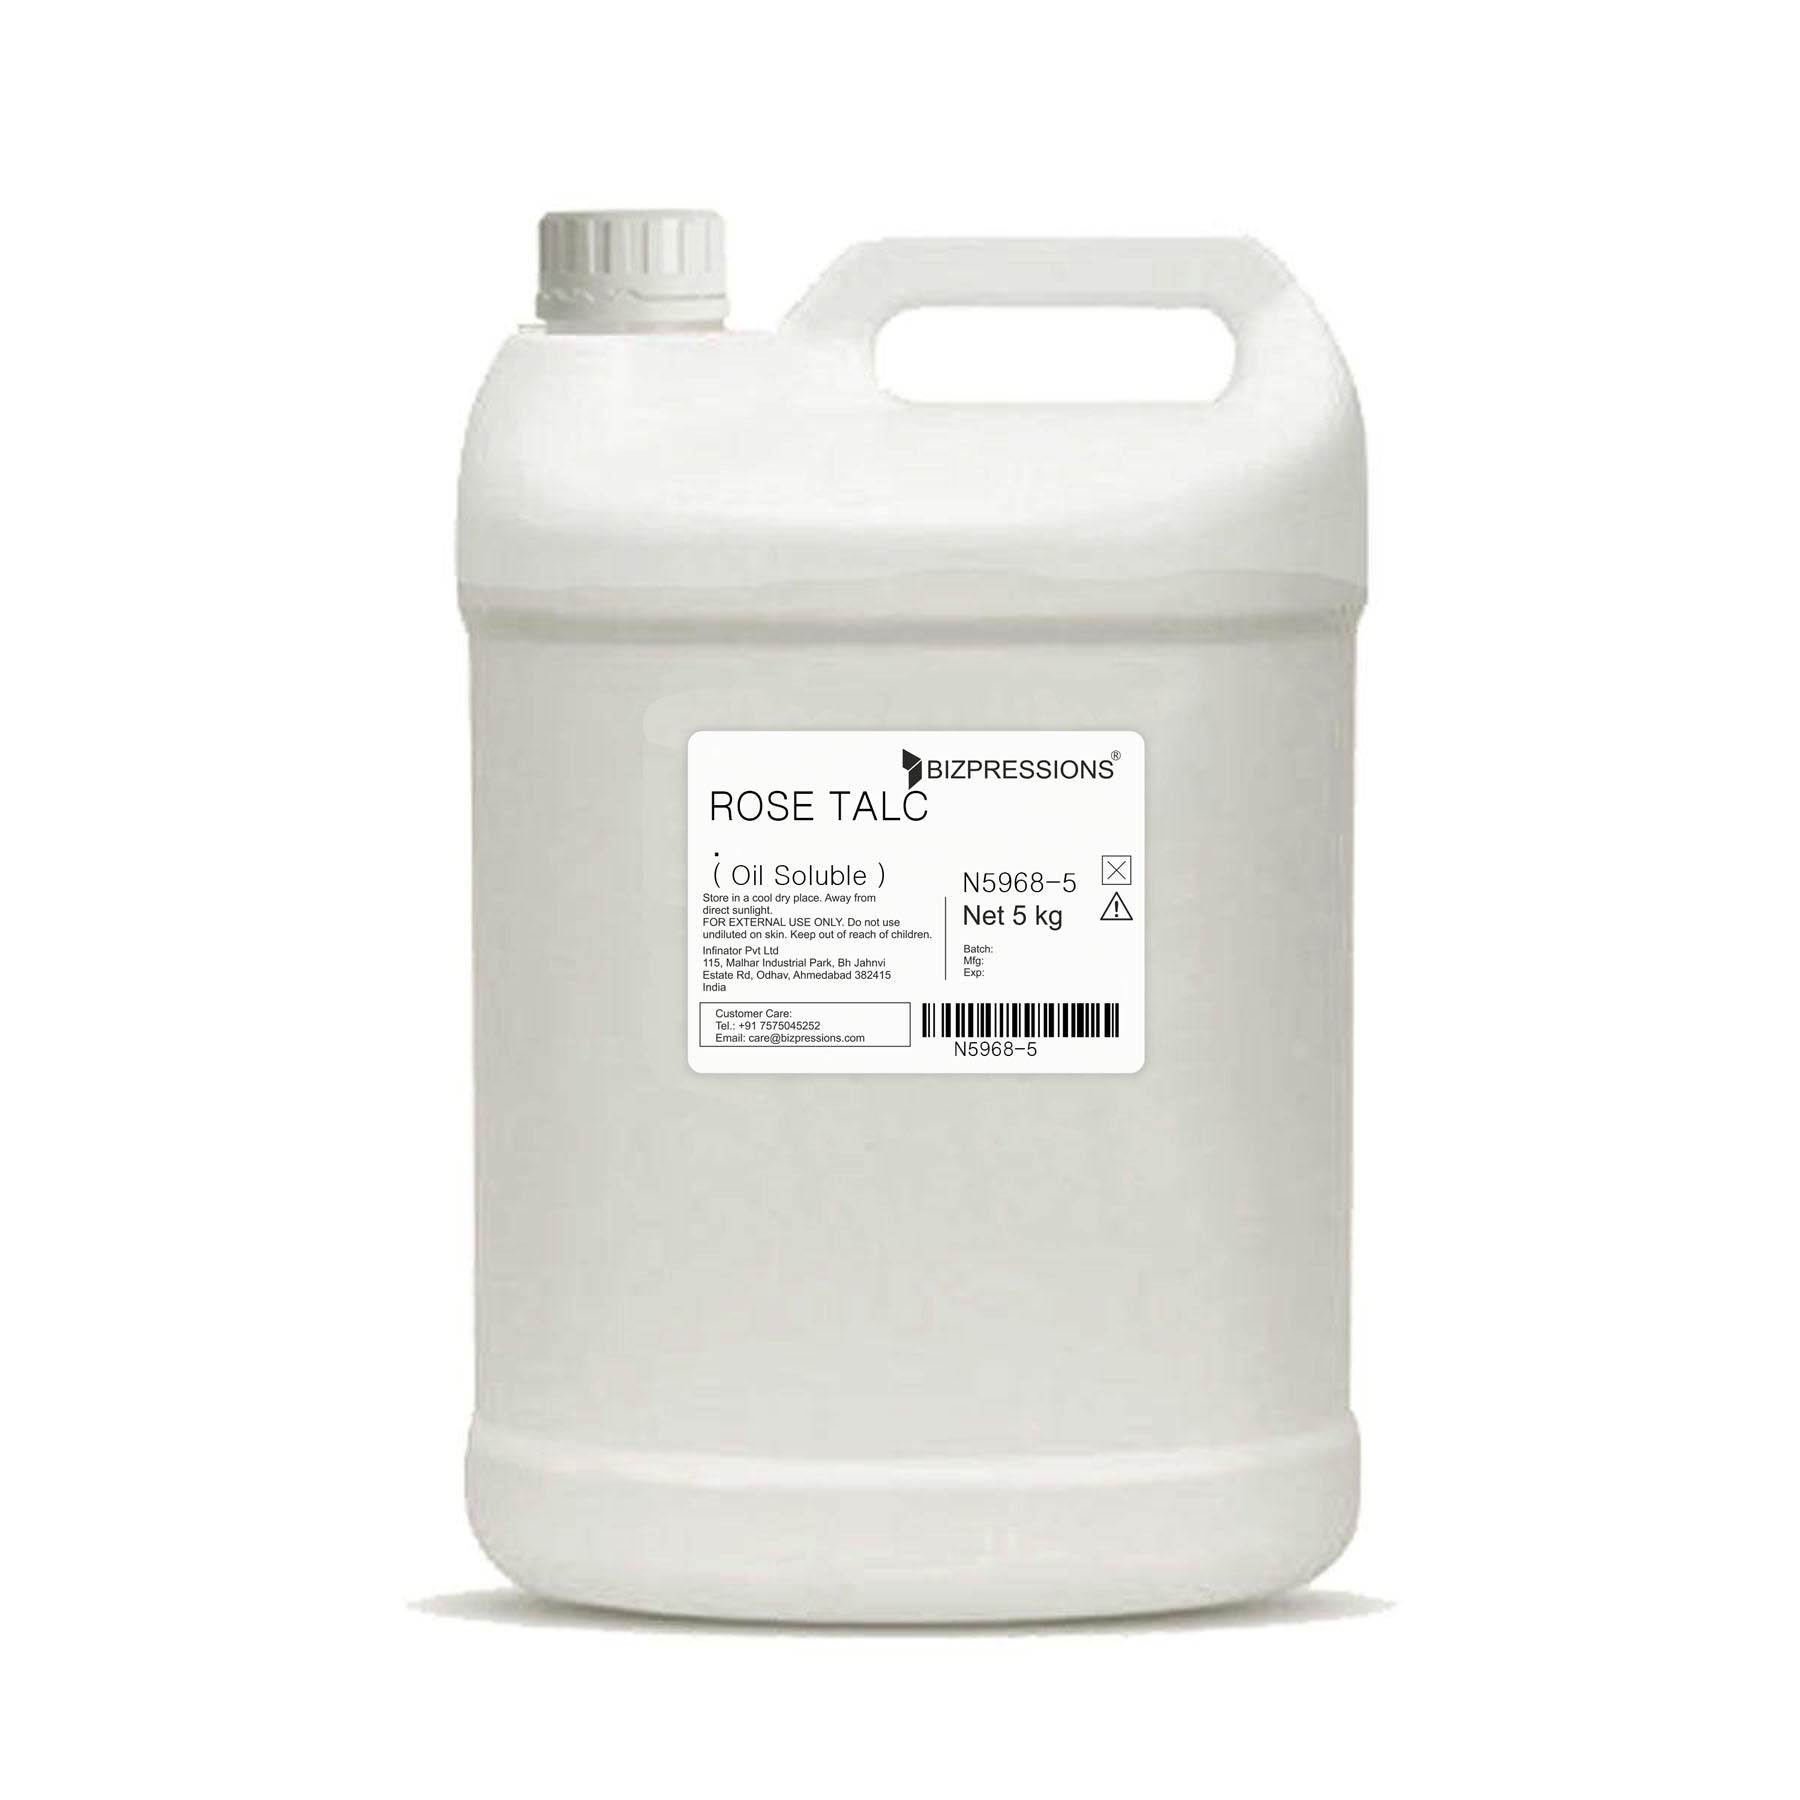 ROSE TALC - Fragrance ( Oil Soluble ) - 5 kg